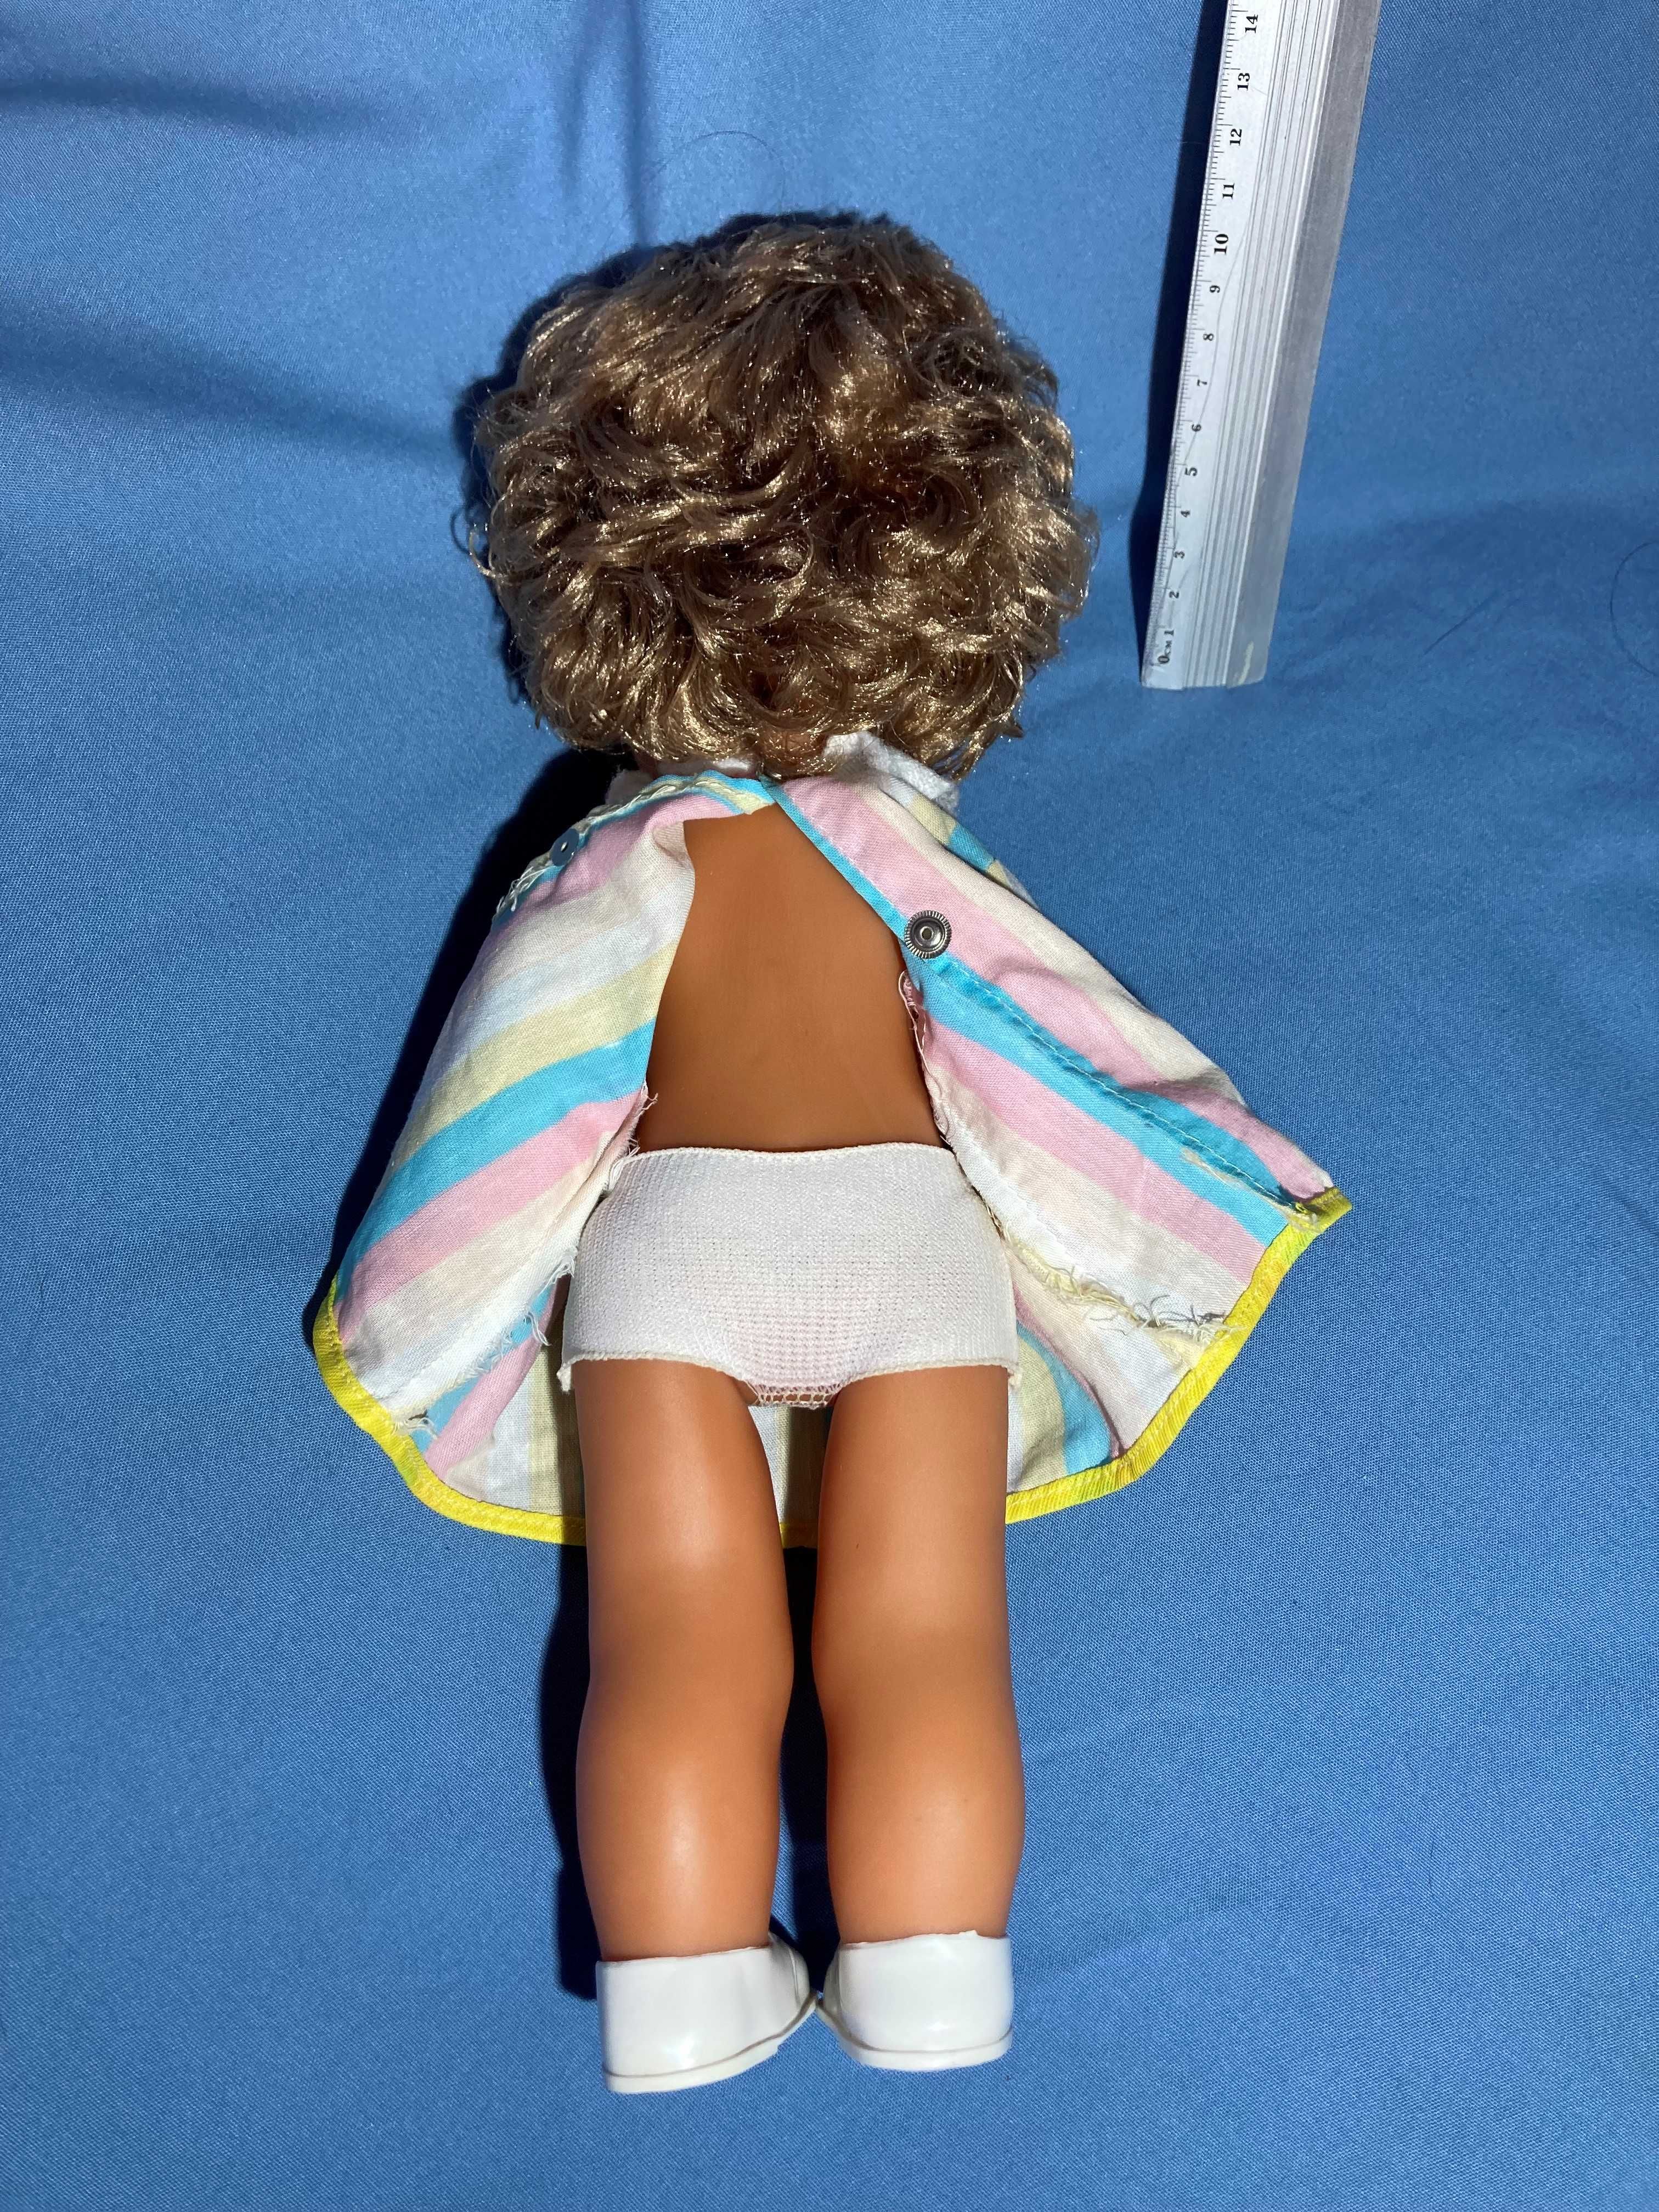 Лялька резинова німецька біггі бигги туфли жирафка кукла гдр 36 см